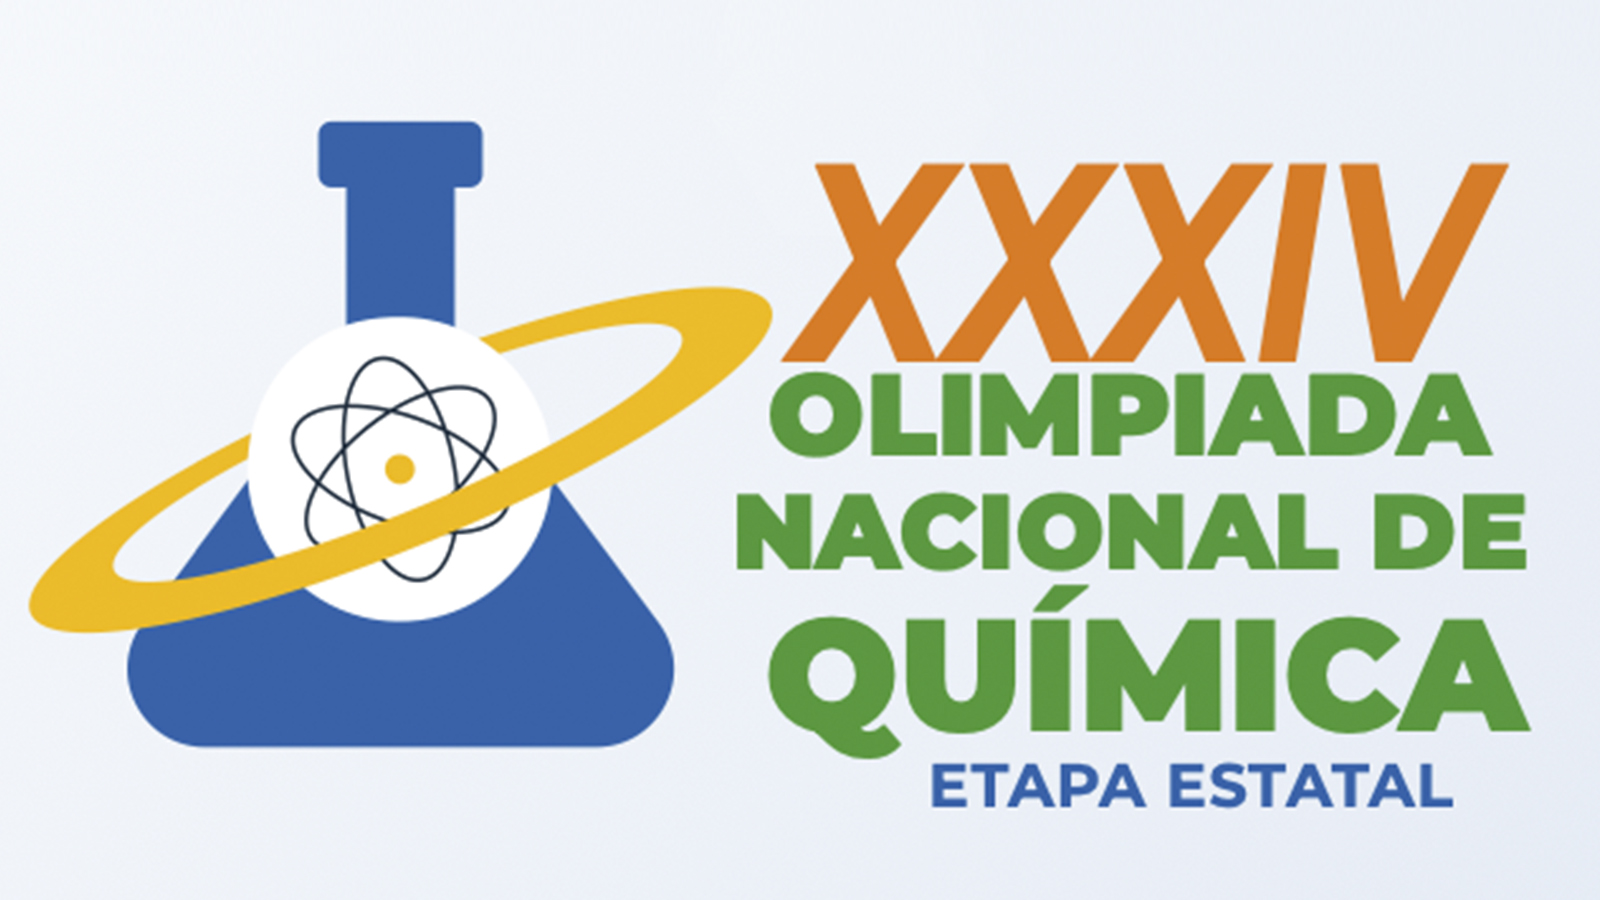 XXXIV OLIMPIADA NACIONAL DE QUÍMICA